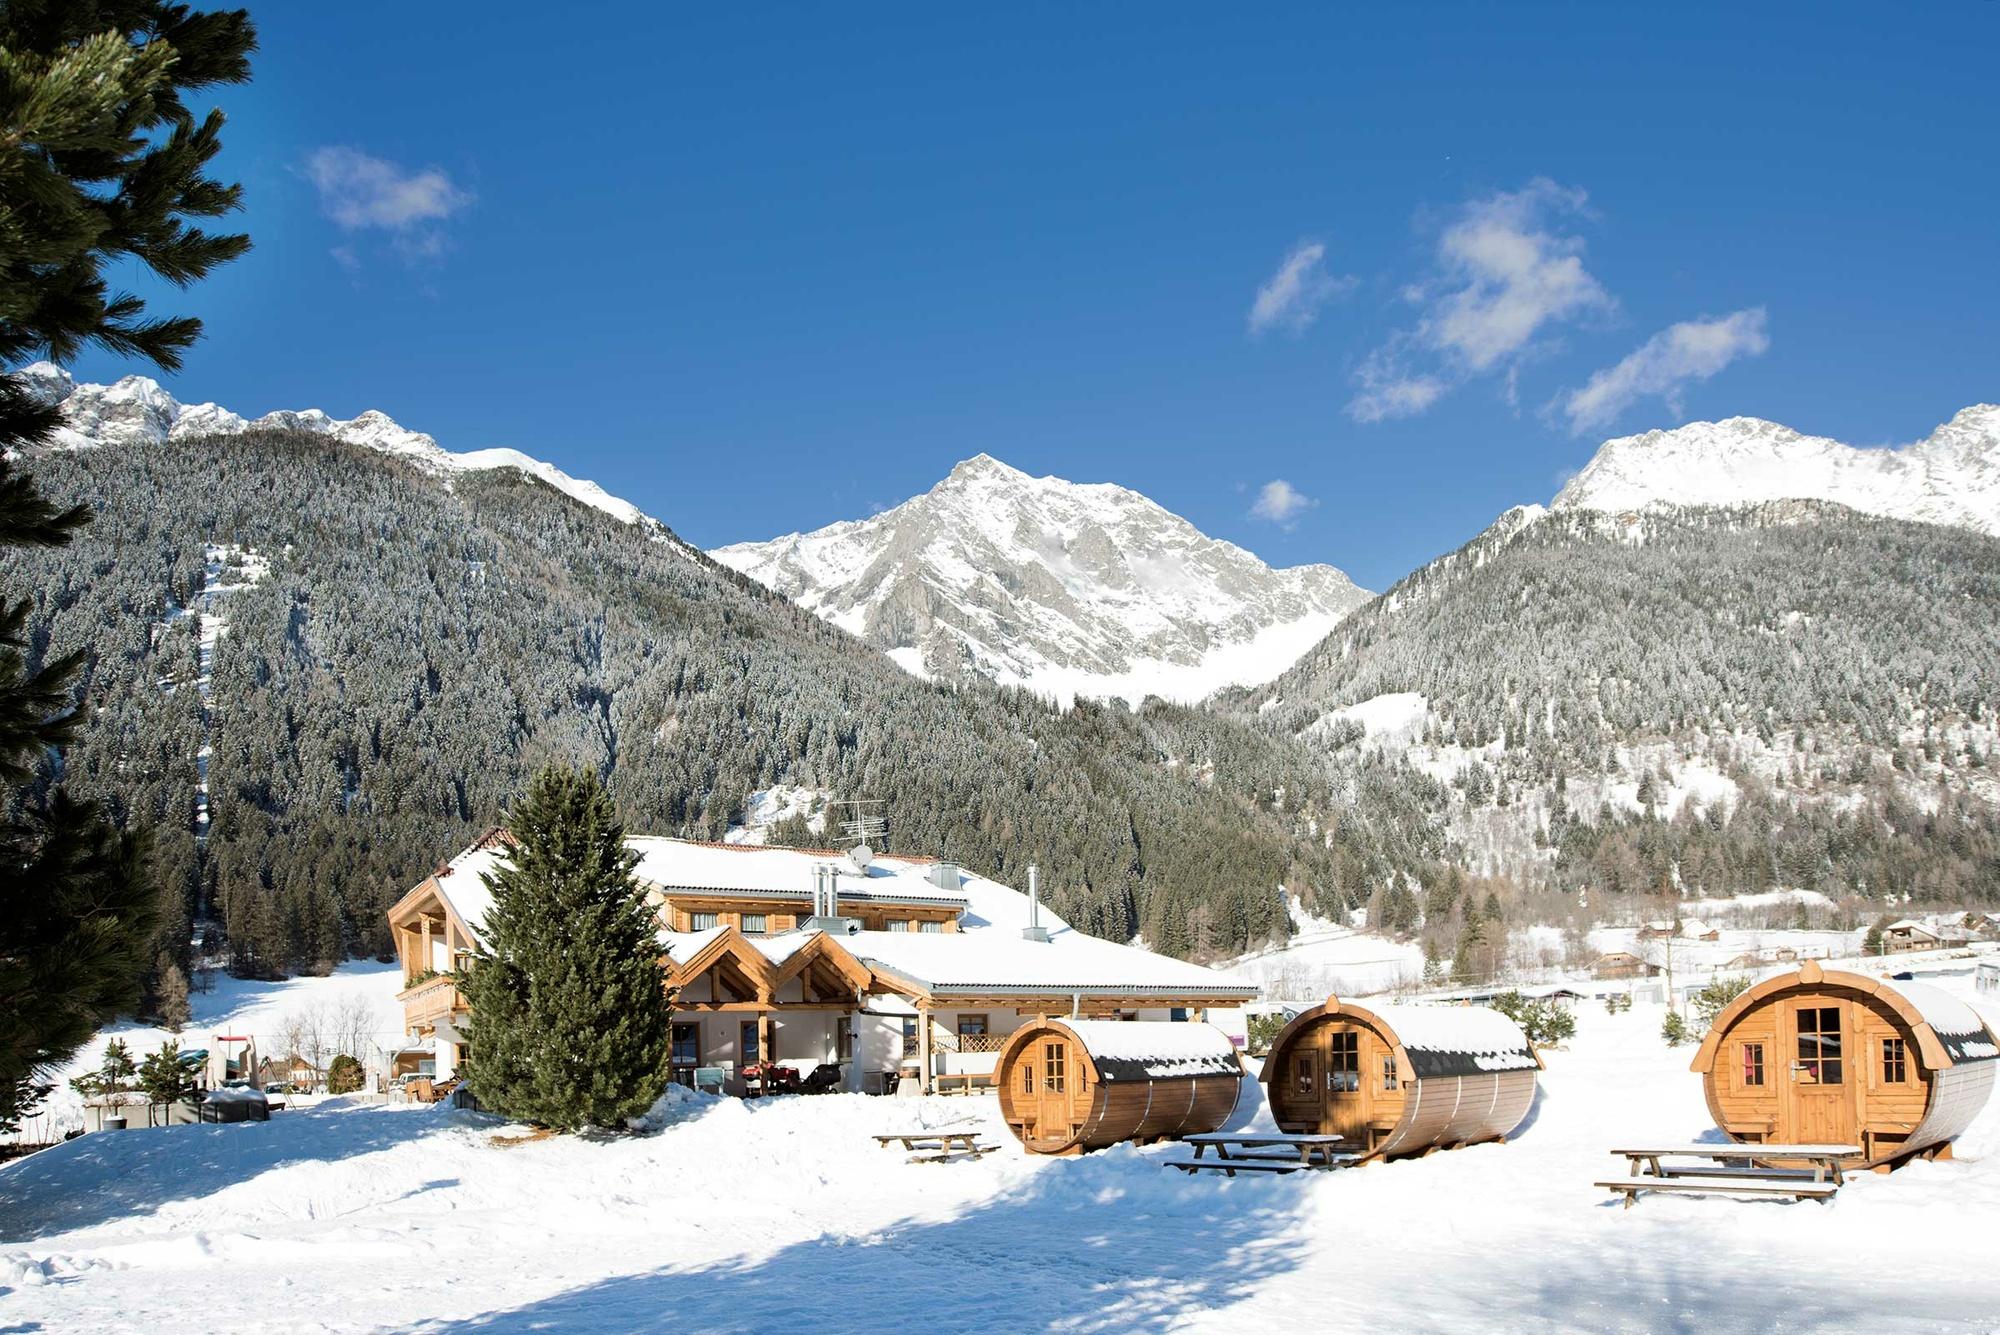 8 najlepszych zimowych kempingów we Włoszech – image 3